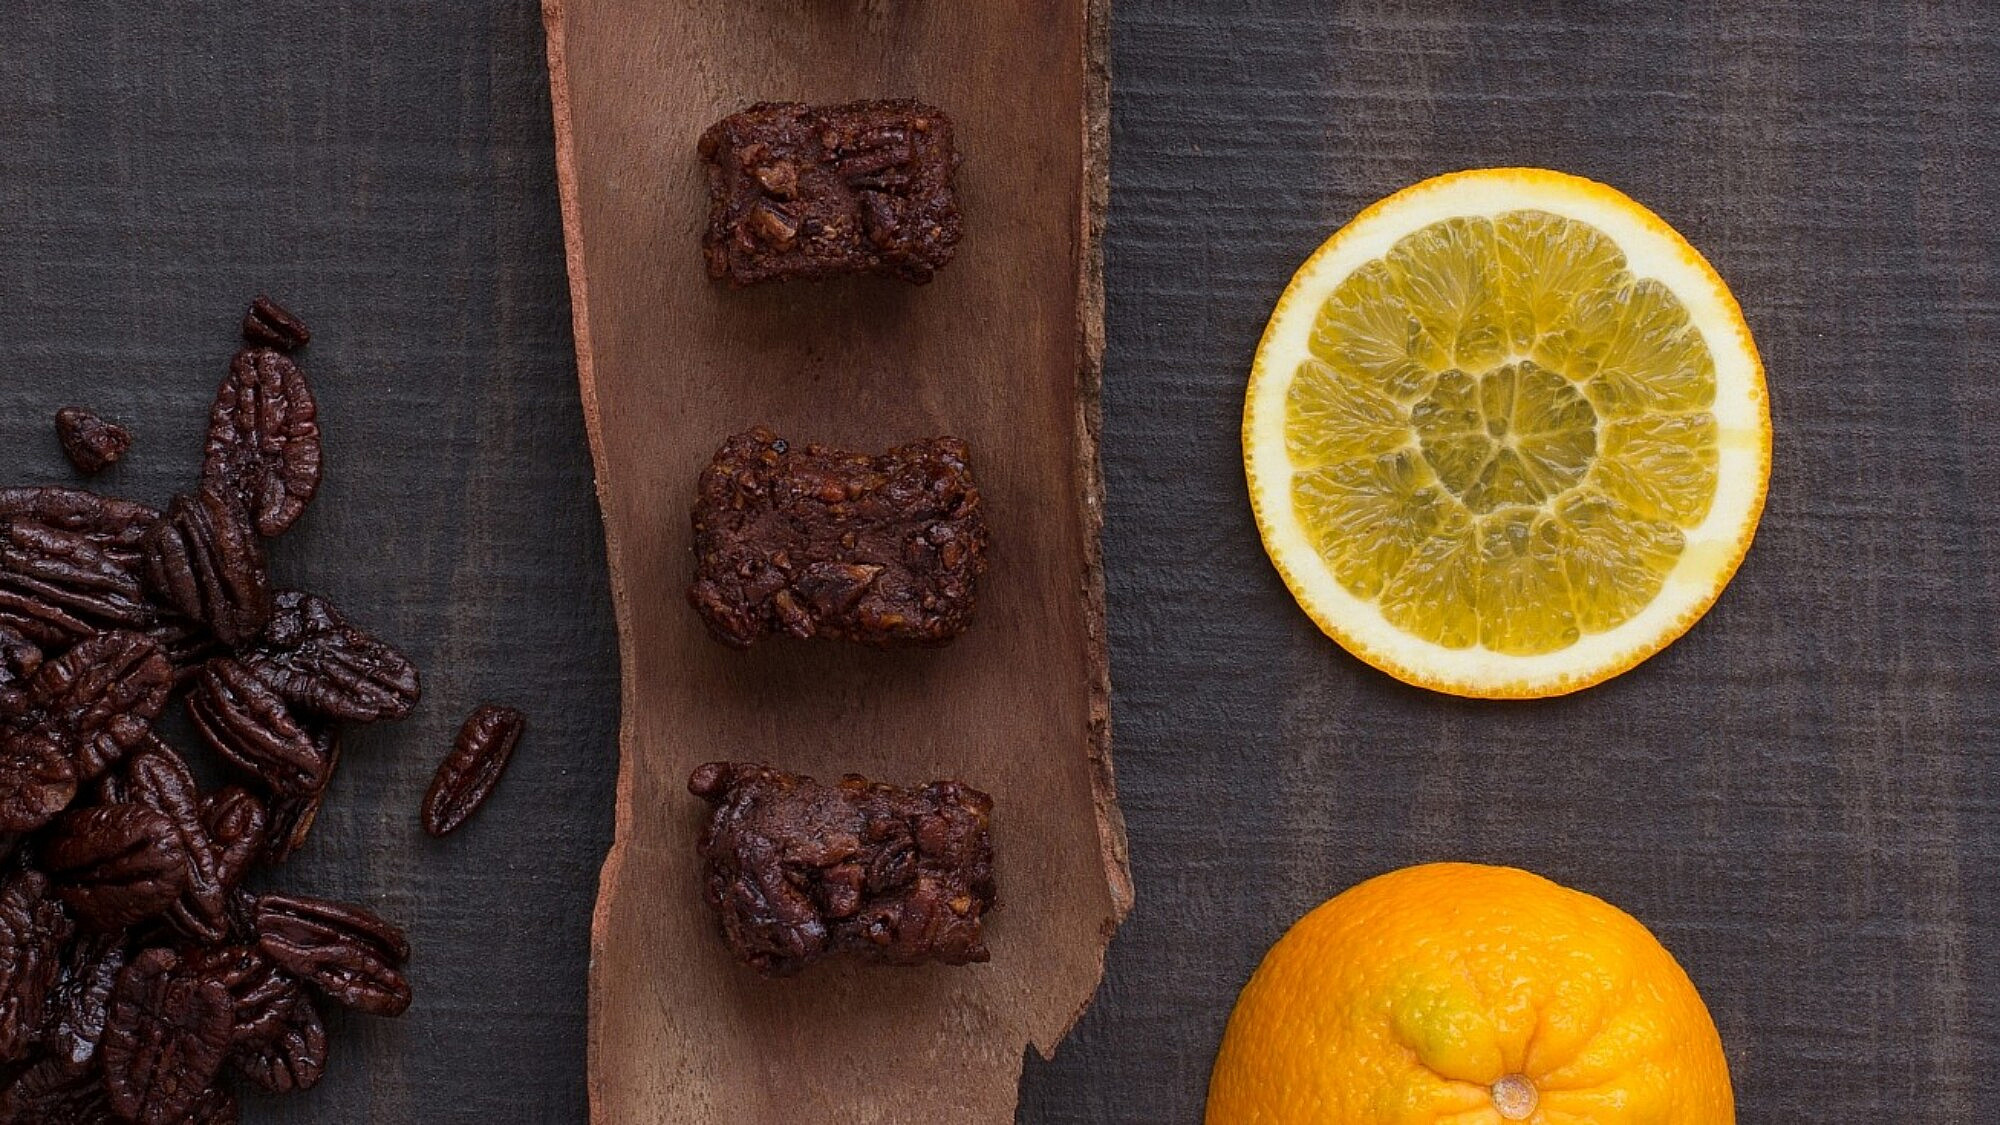 קוביות שוקולד תפוז של הקונדיטור גל קזס. צילום: אייל ג'מילי, סטודיו Food־Foo. סטיילינג: שני הולצקר